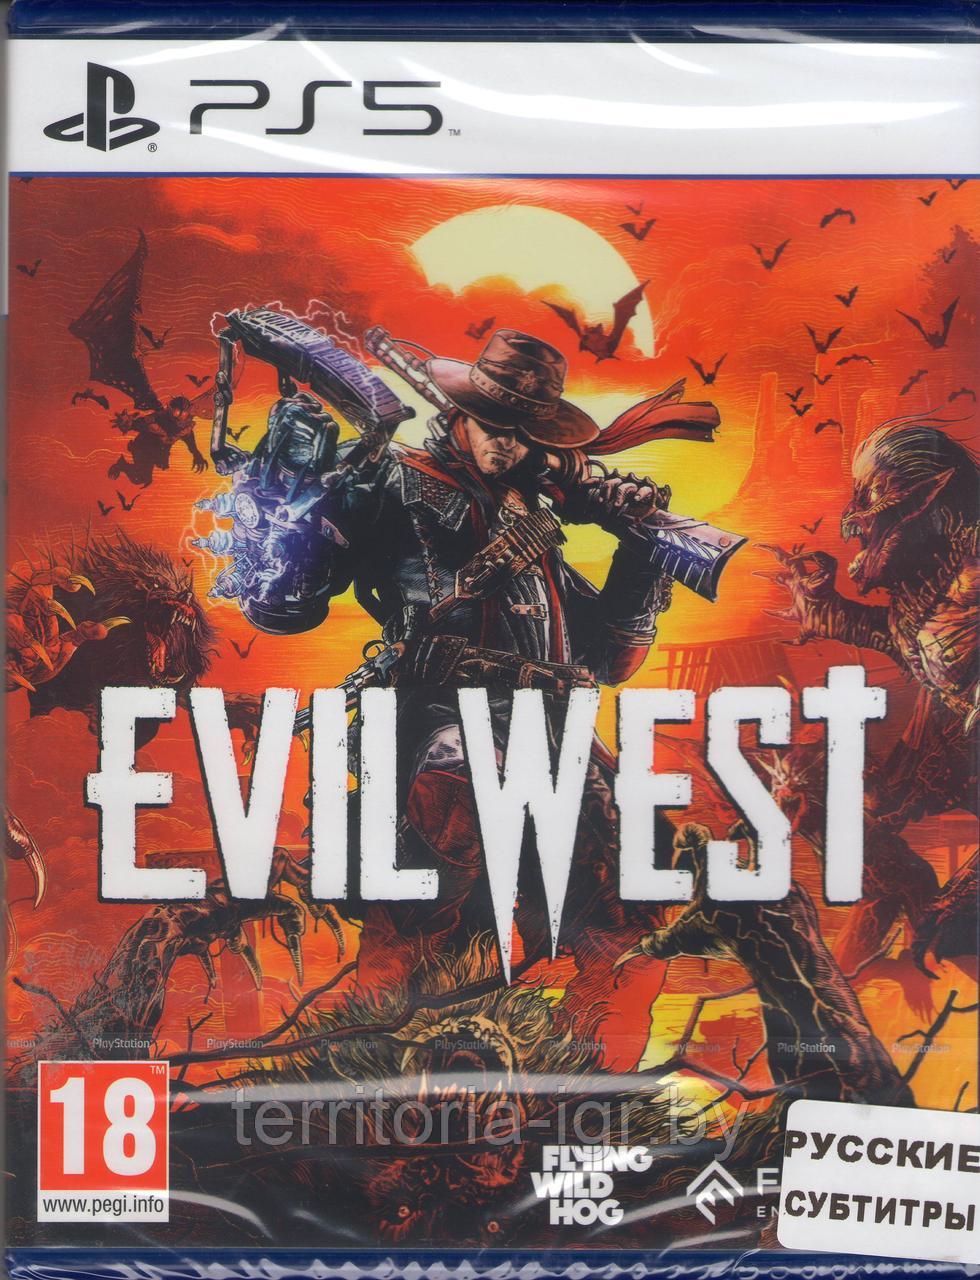 Evil West для PlayStation 5 (PS5 Злой Запад Диск русские субтитры)